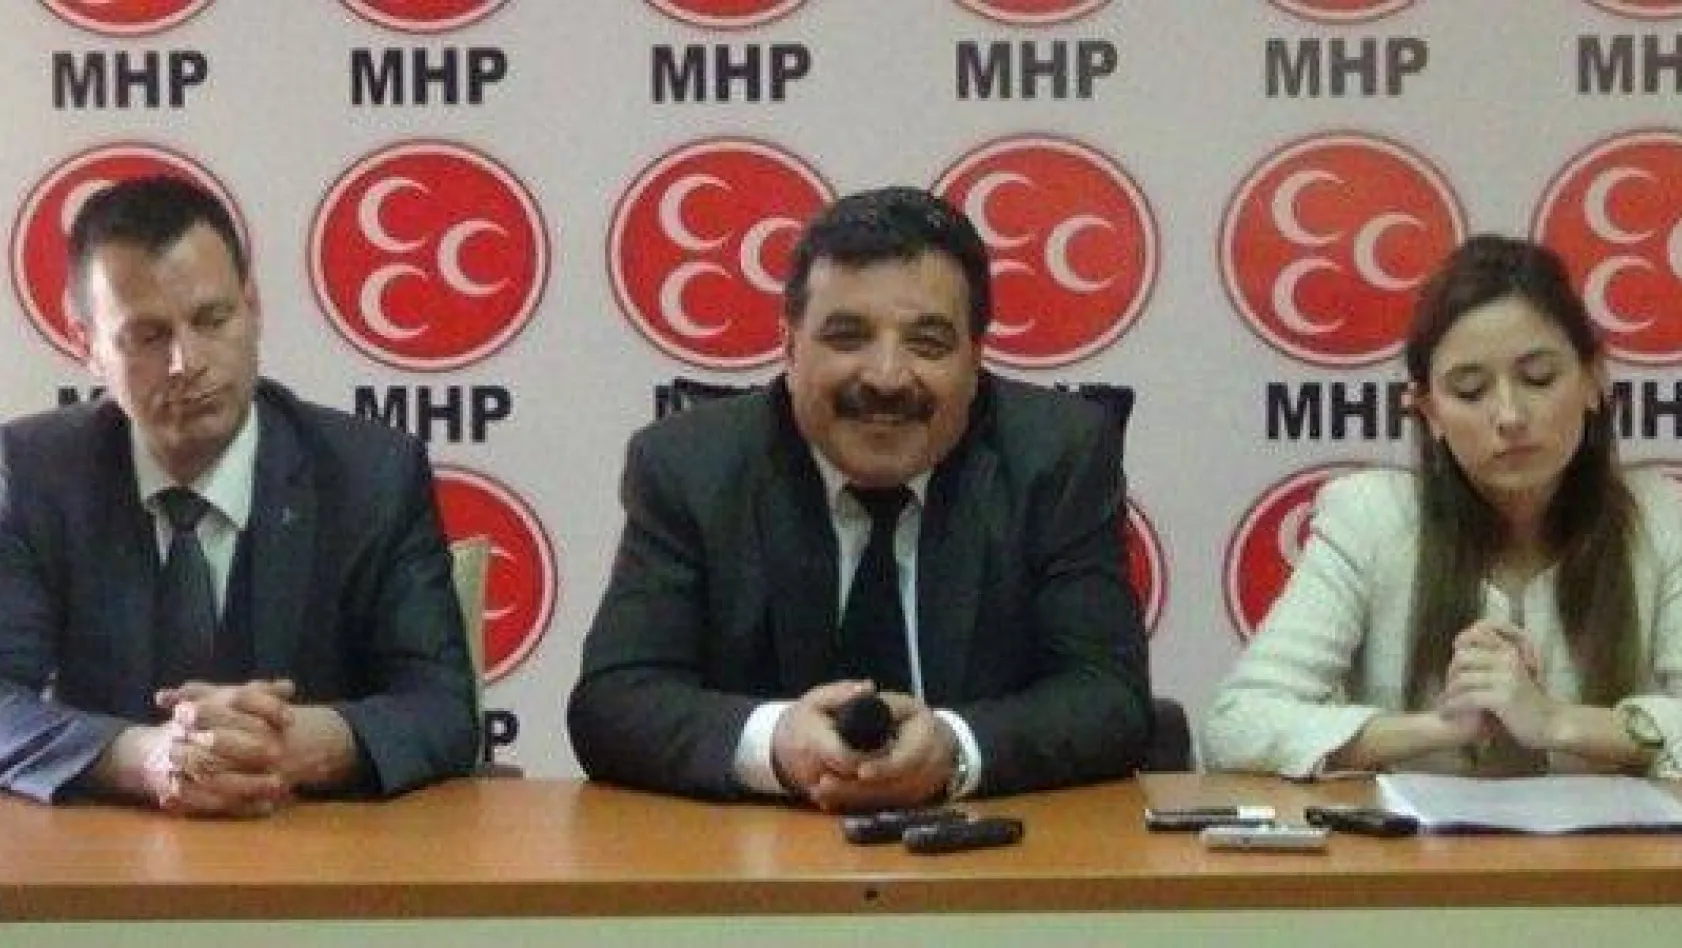 MHP'den açıklama: 'CHP'yi desteklemiyoruz'